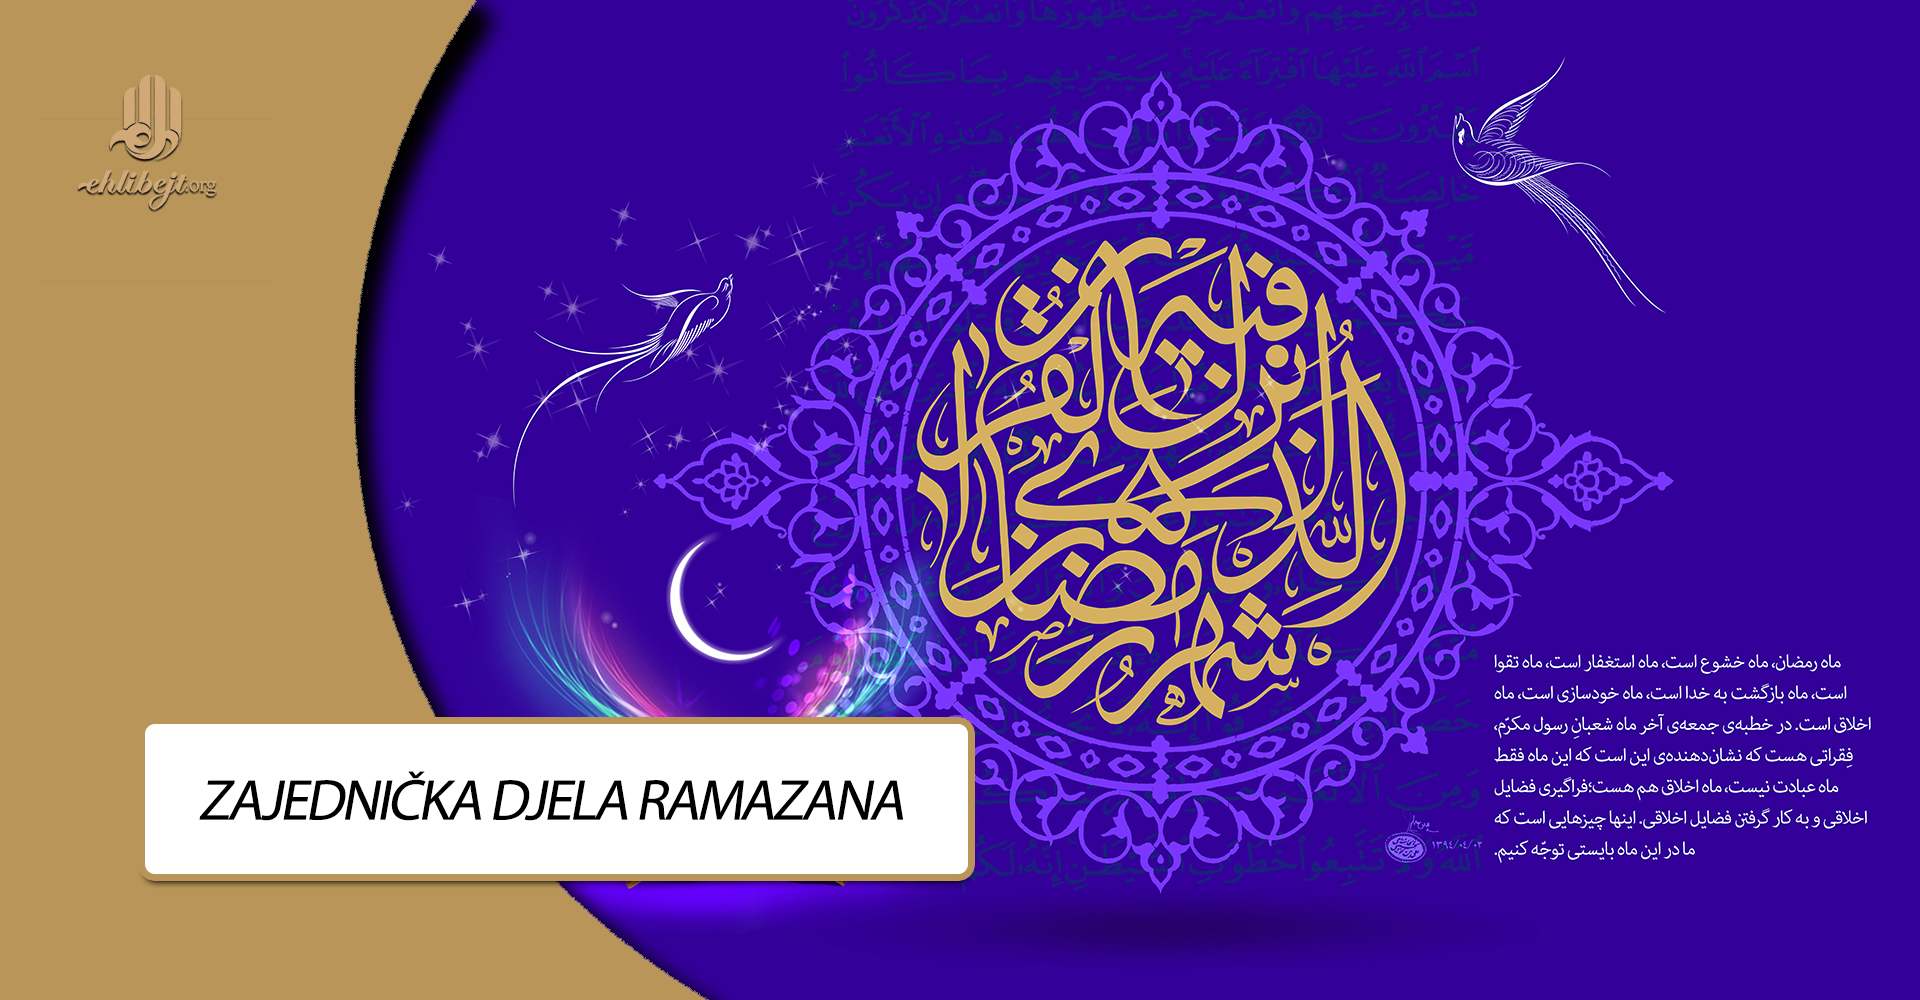 Zajednička djela ramazana